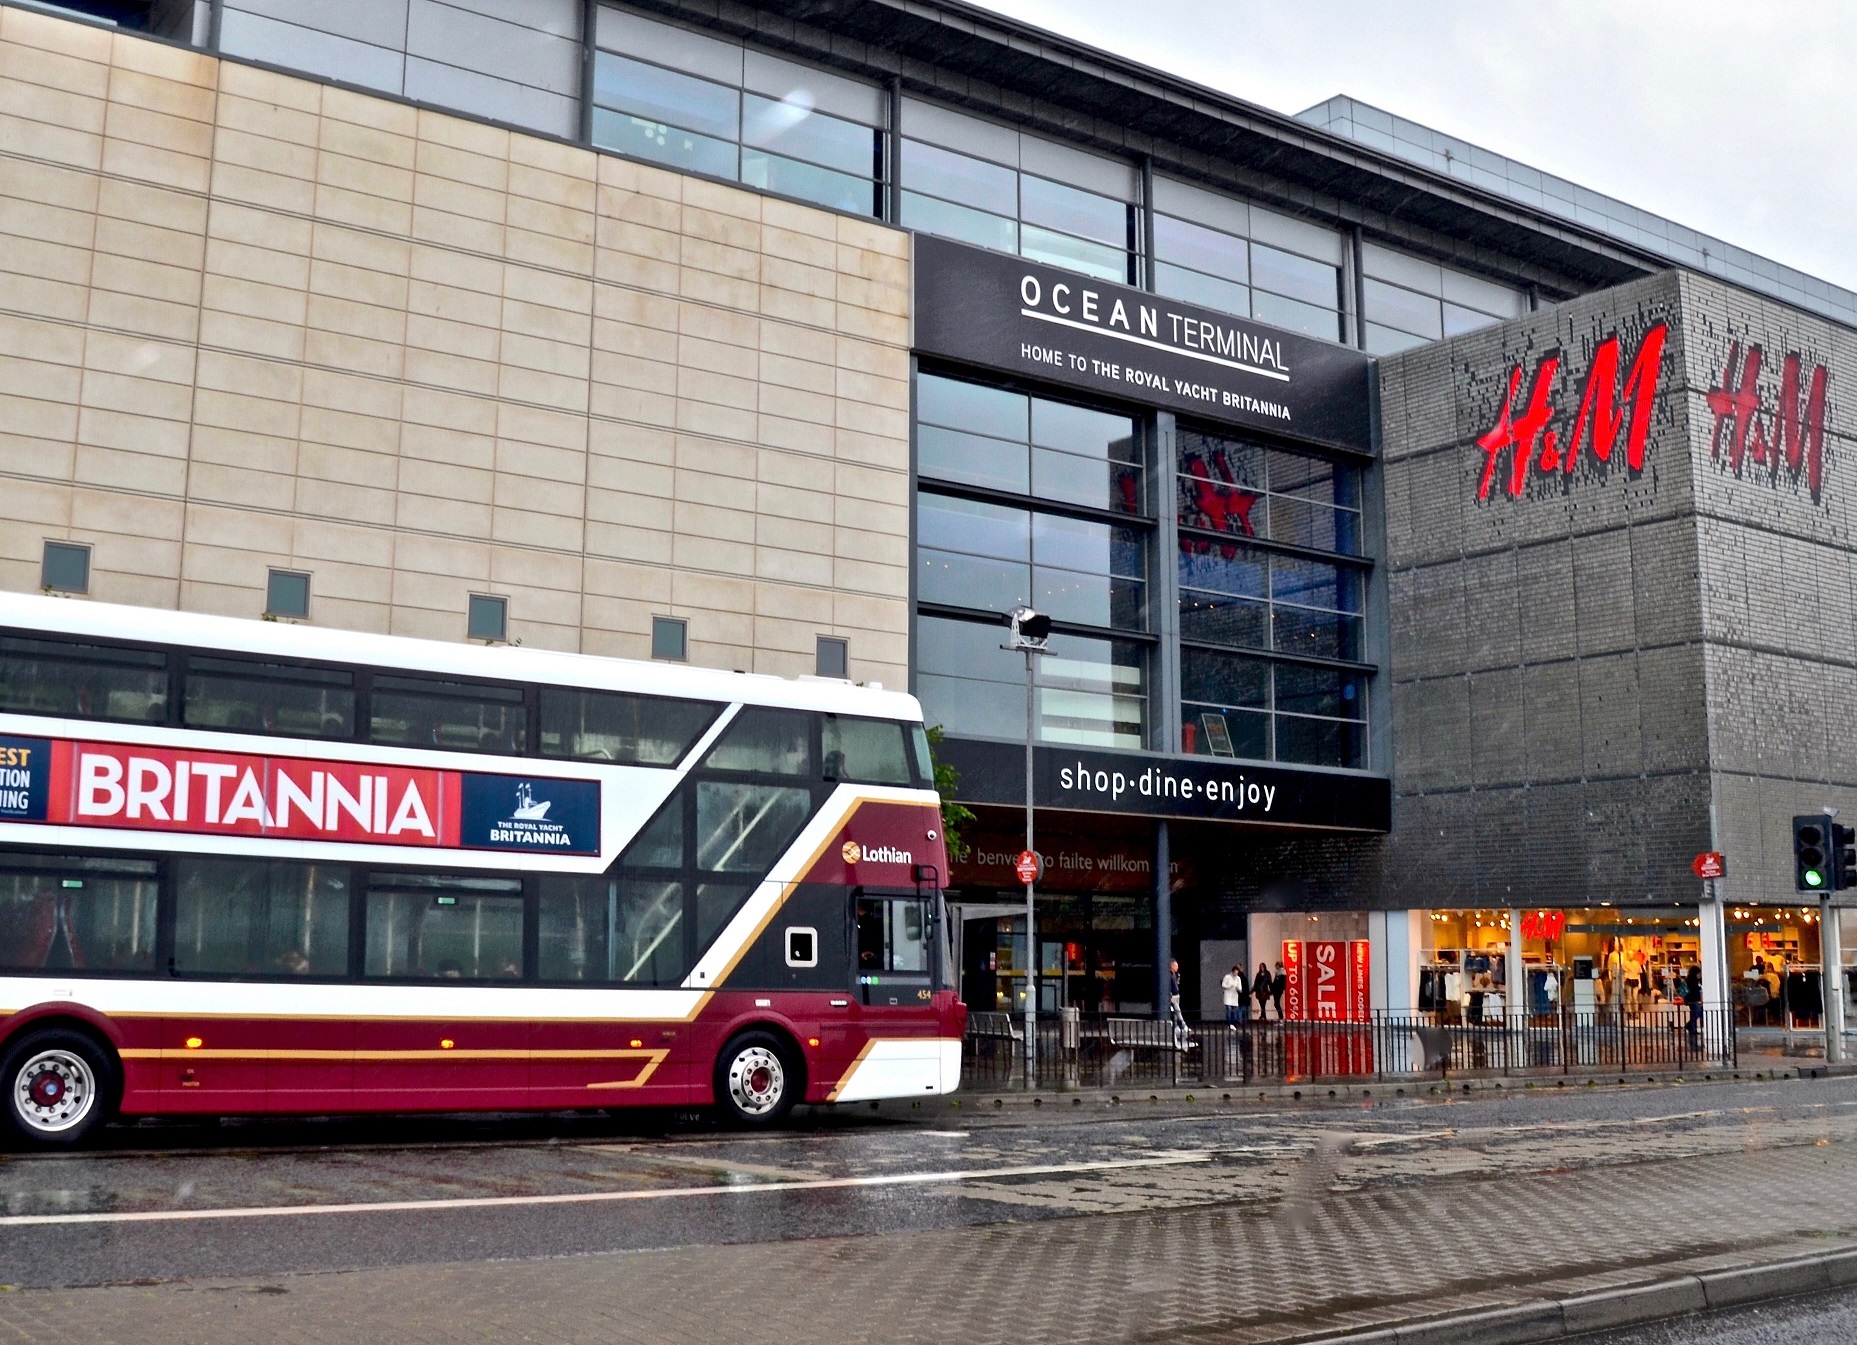 Scotland under 22 free bus travel scheme delivers 45m journeys